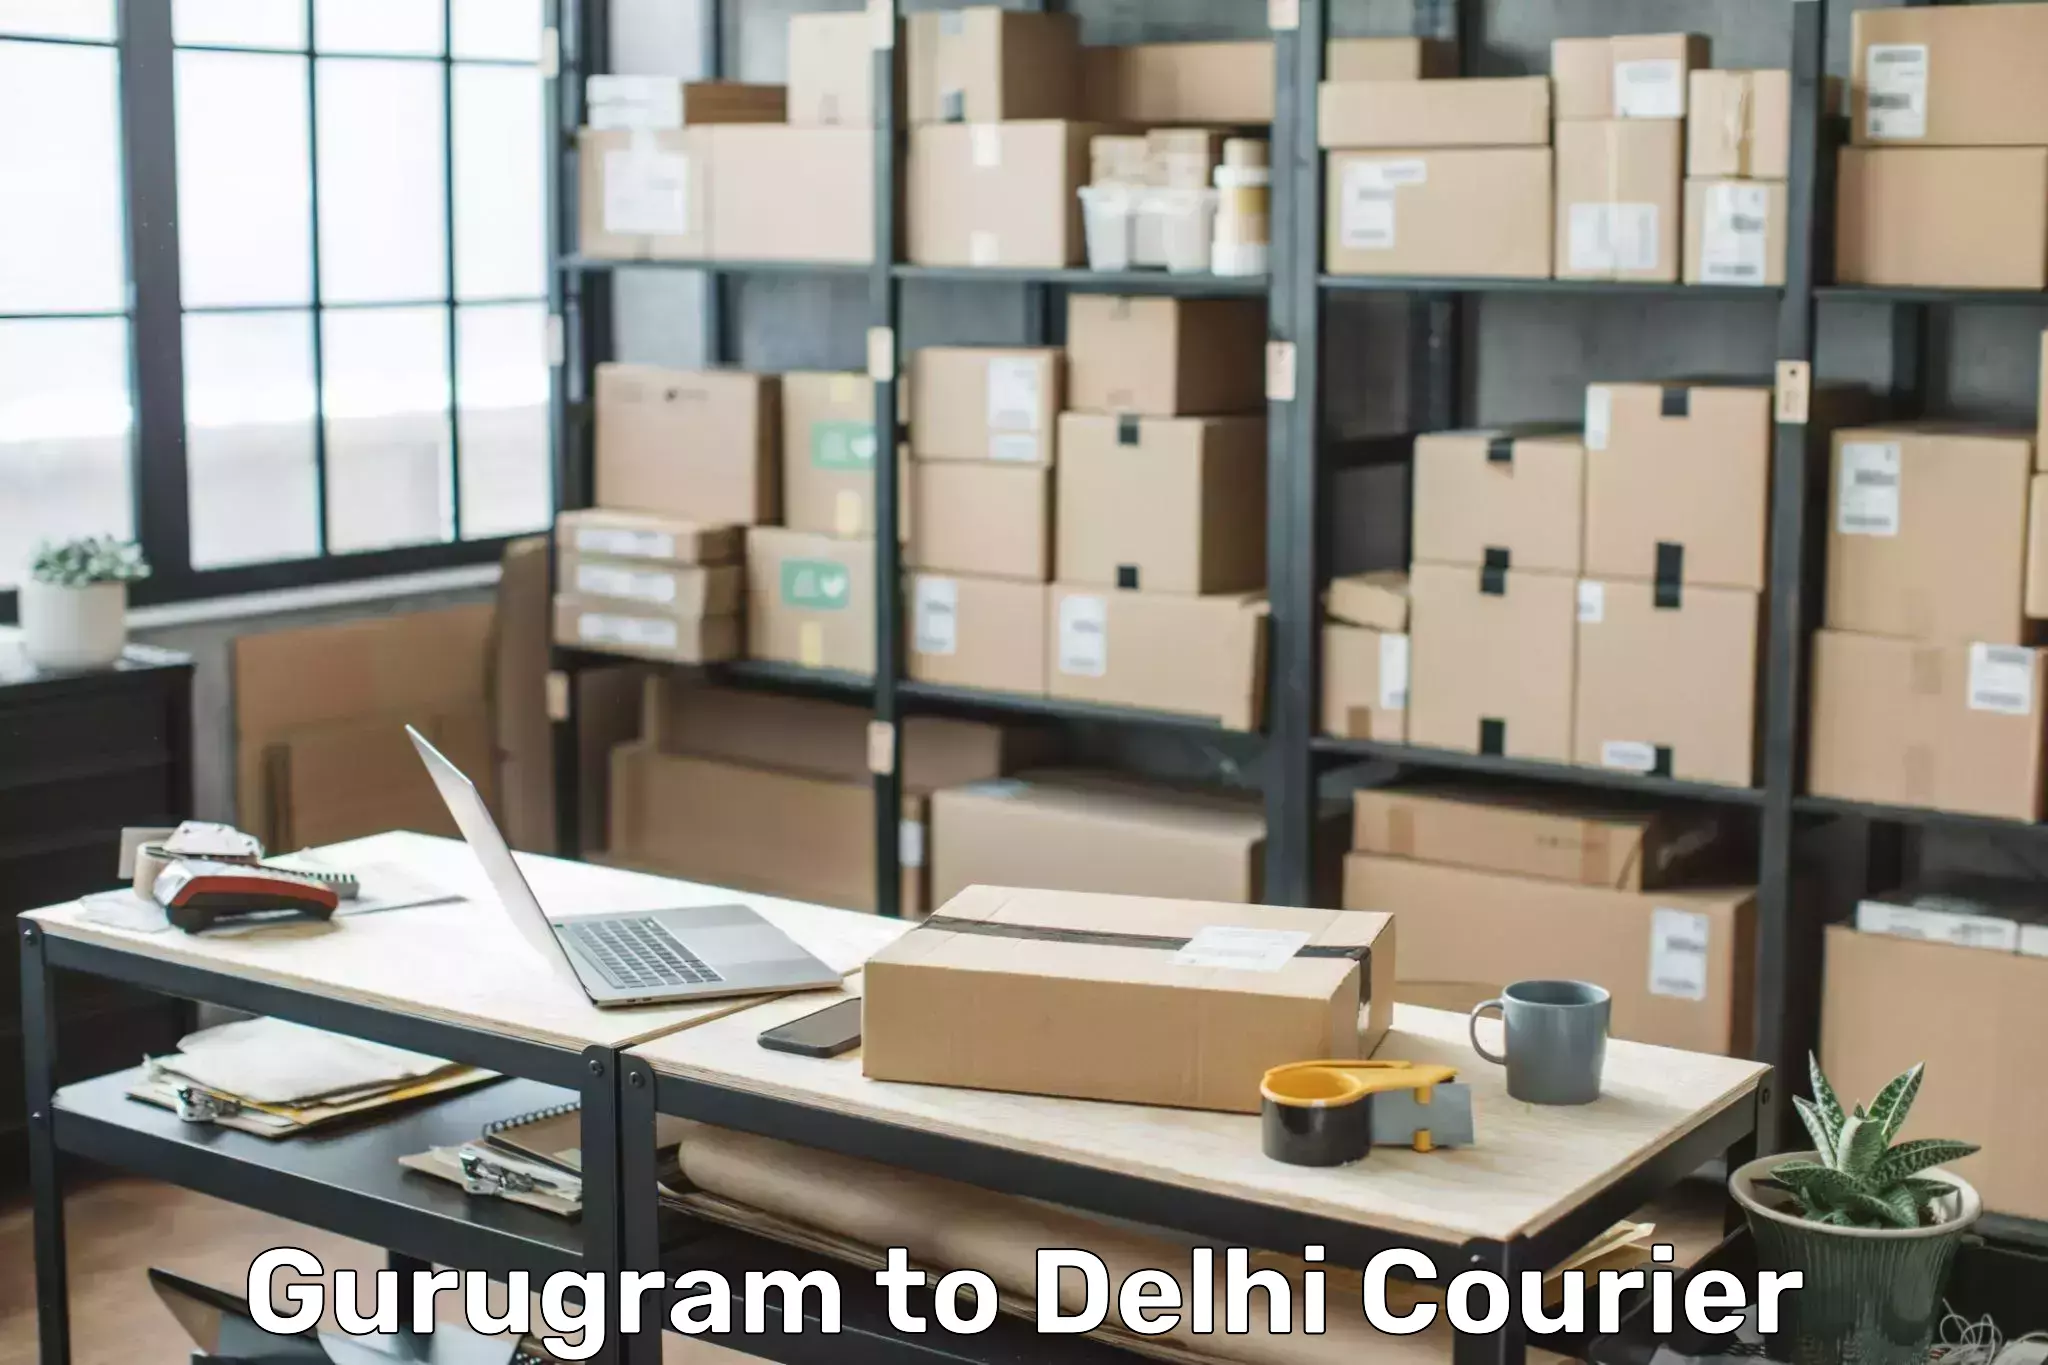 Door-to-door baggage service Gurugram to Delhi